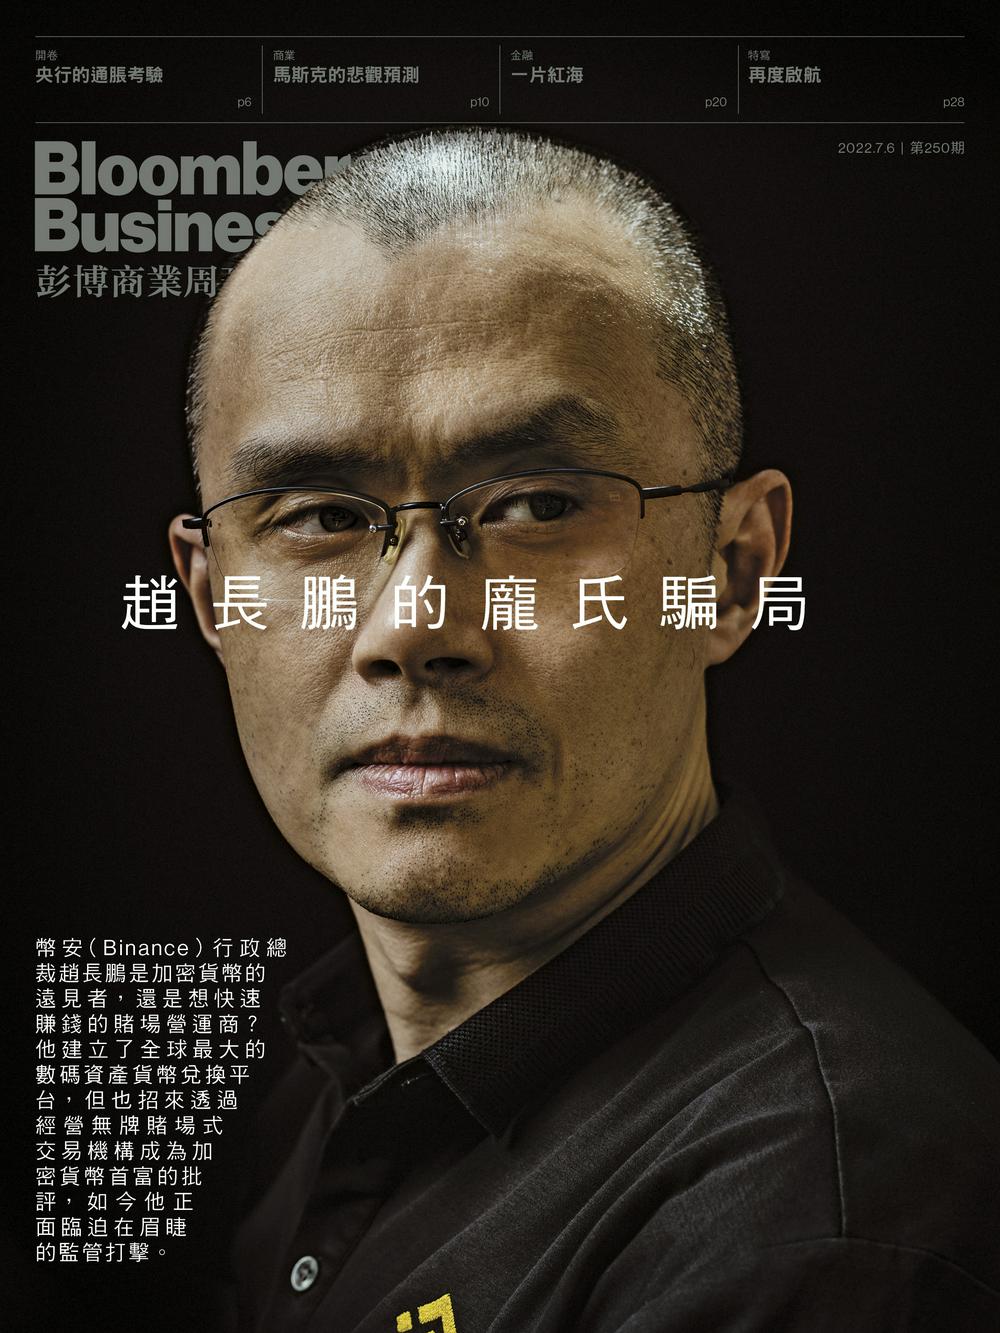 赵长鹏起诉彭博商业周刊的香港出版商诽谤